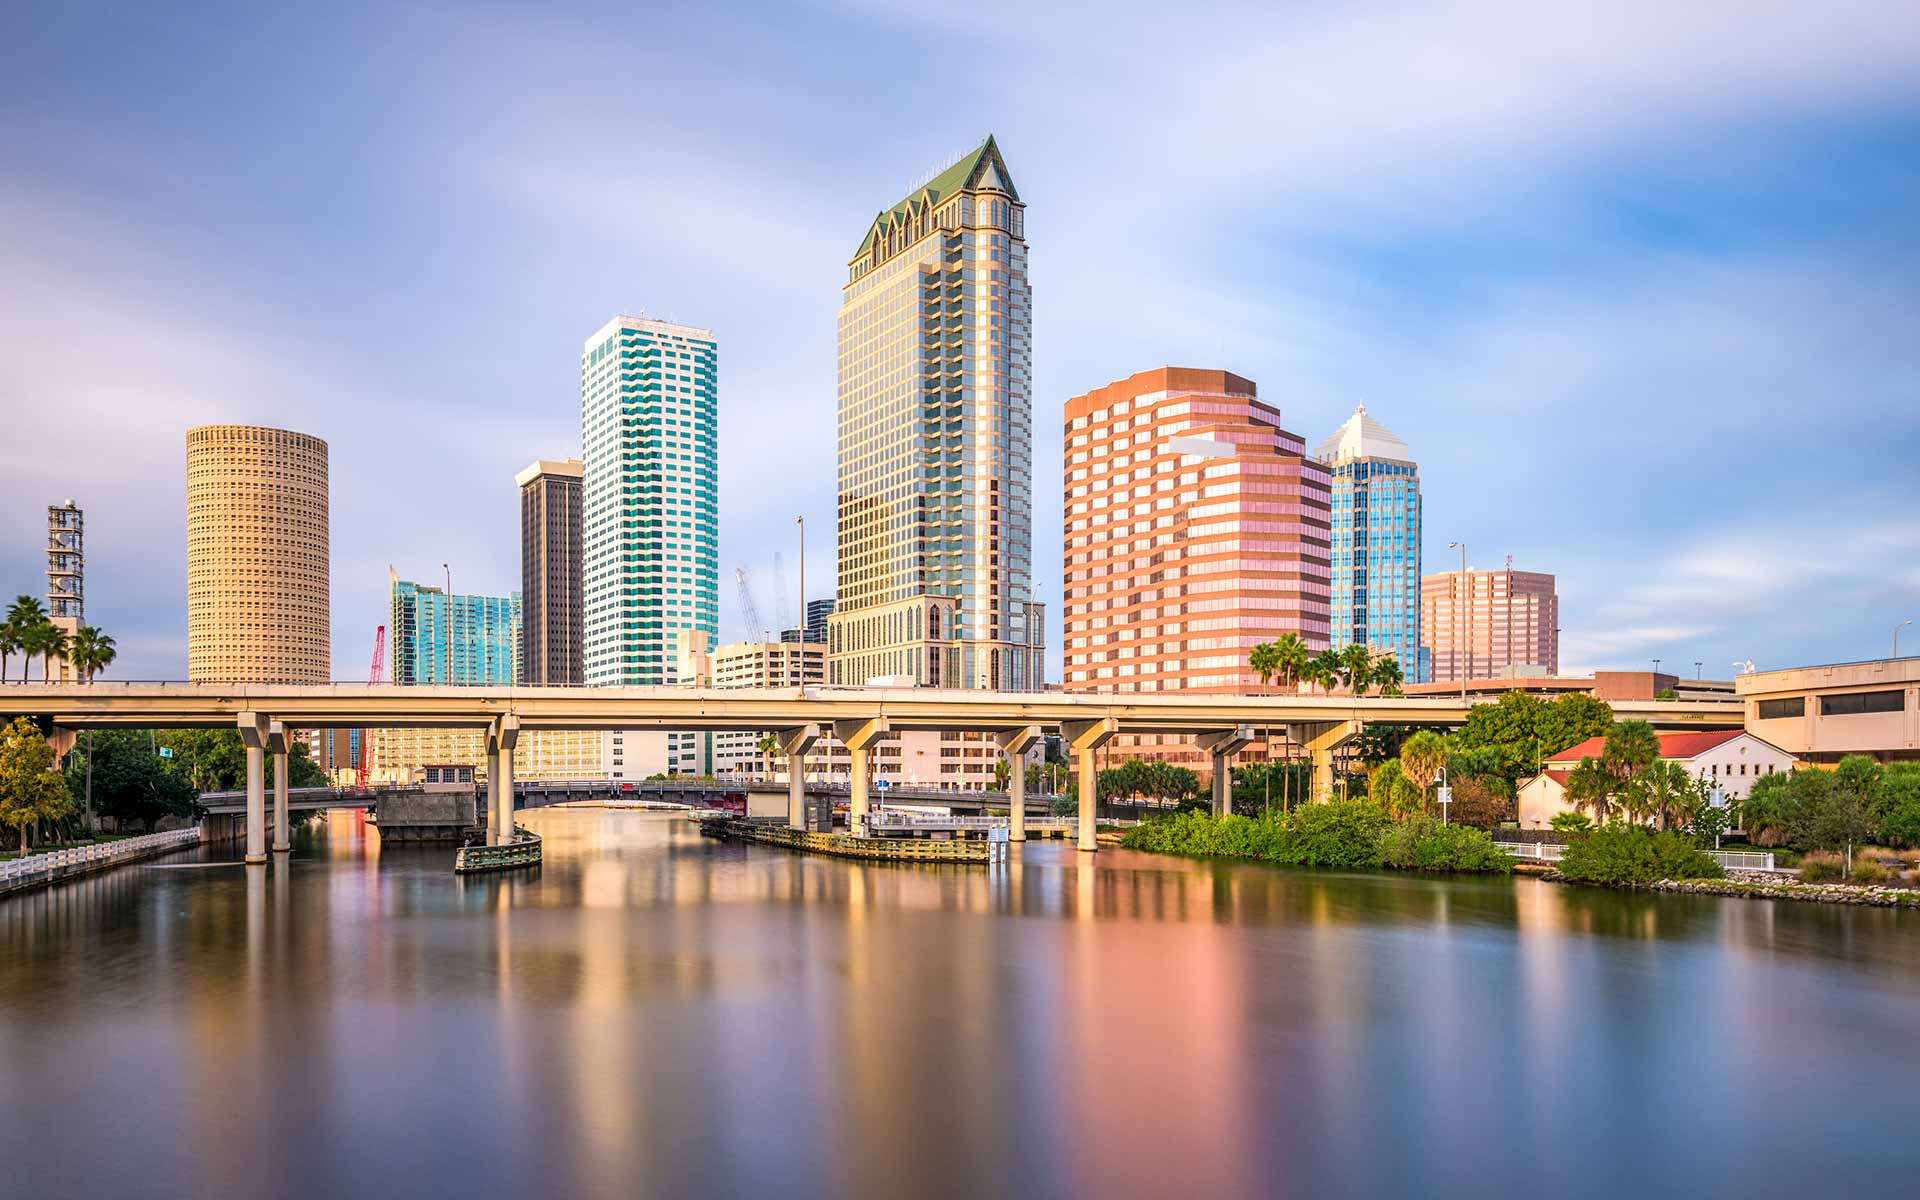 Tampa